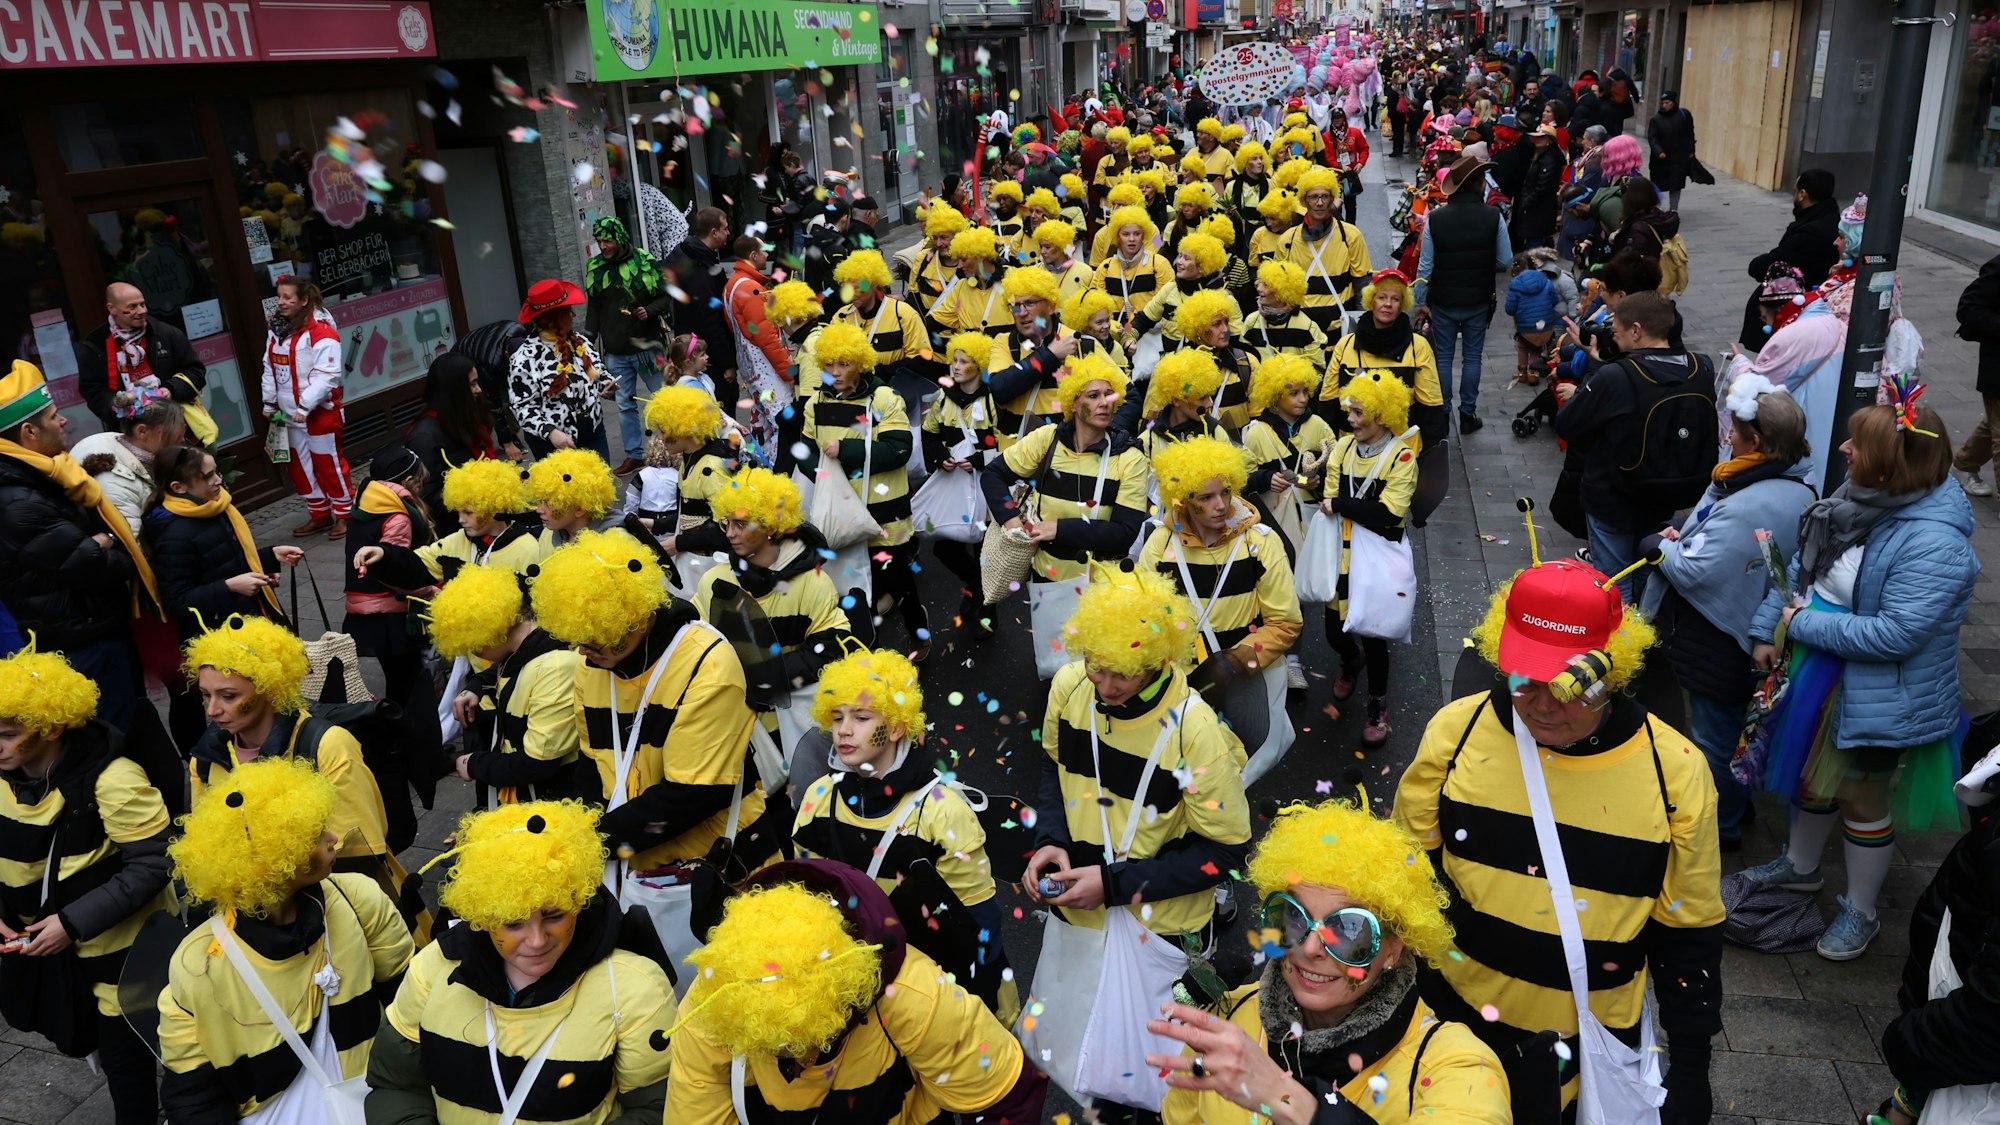 Bienenkostüme gibt es nicht nur bei den Zuschauern, sondern auch bei den Schulgruppen: Das Dreikönigsgymnasium schickt gleich ein ganzes Bienenvolk ins Rennen und thematisiert damit nach eigener Auskunft auch ihr Nachhaltigkeitsprinzip. 




